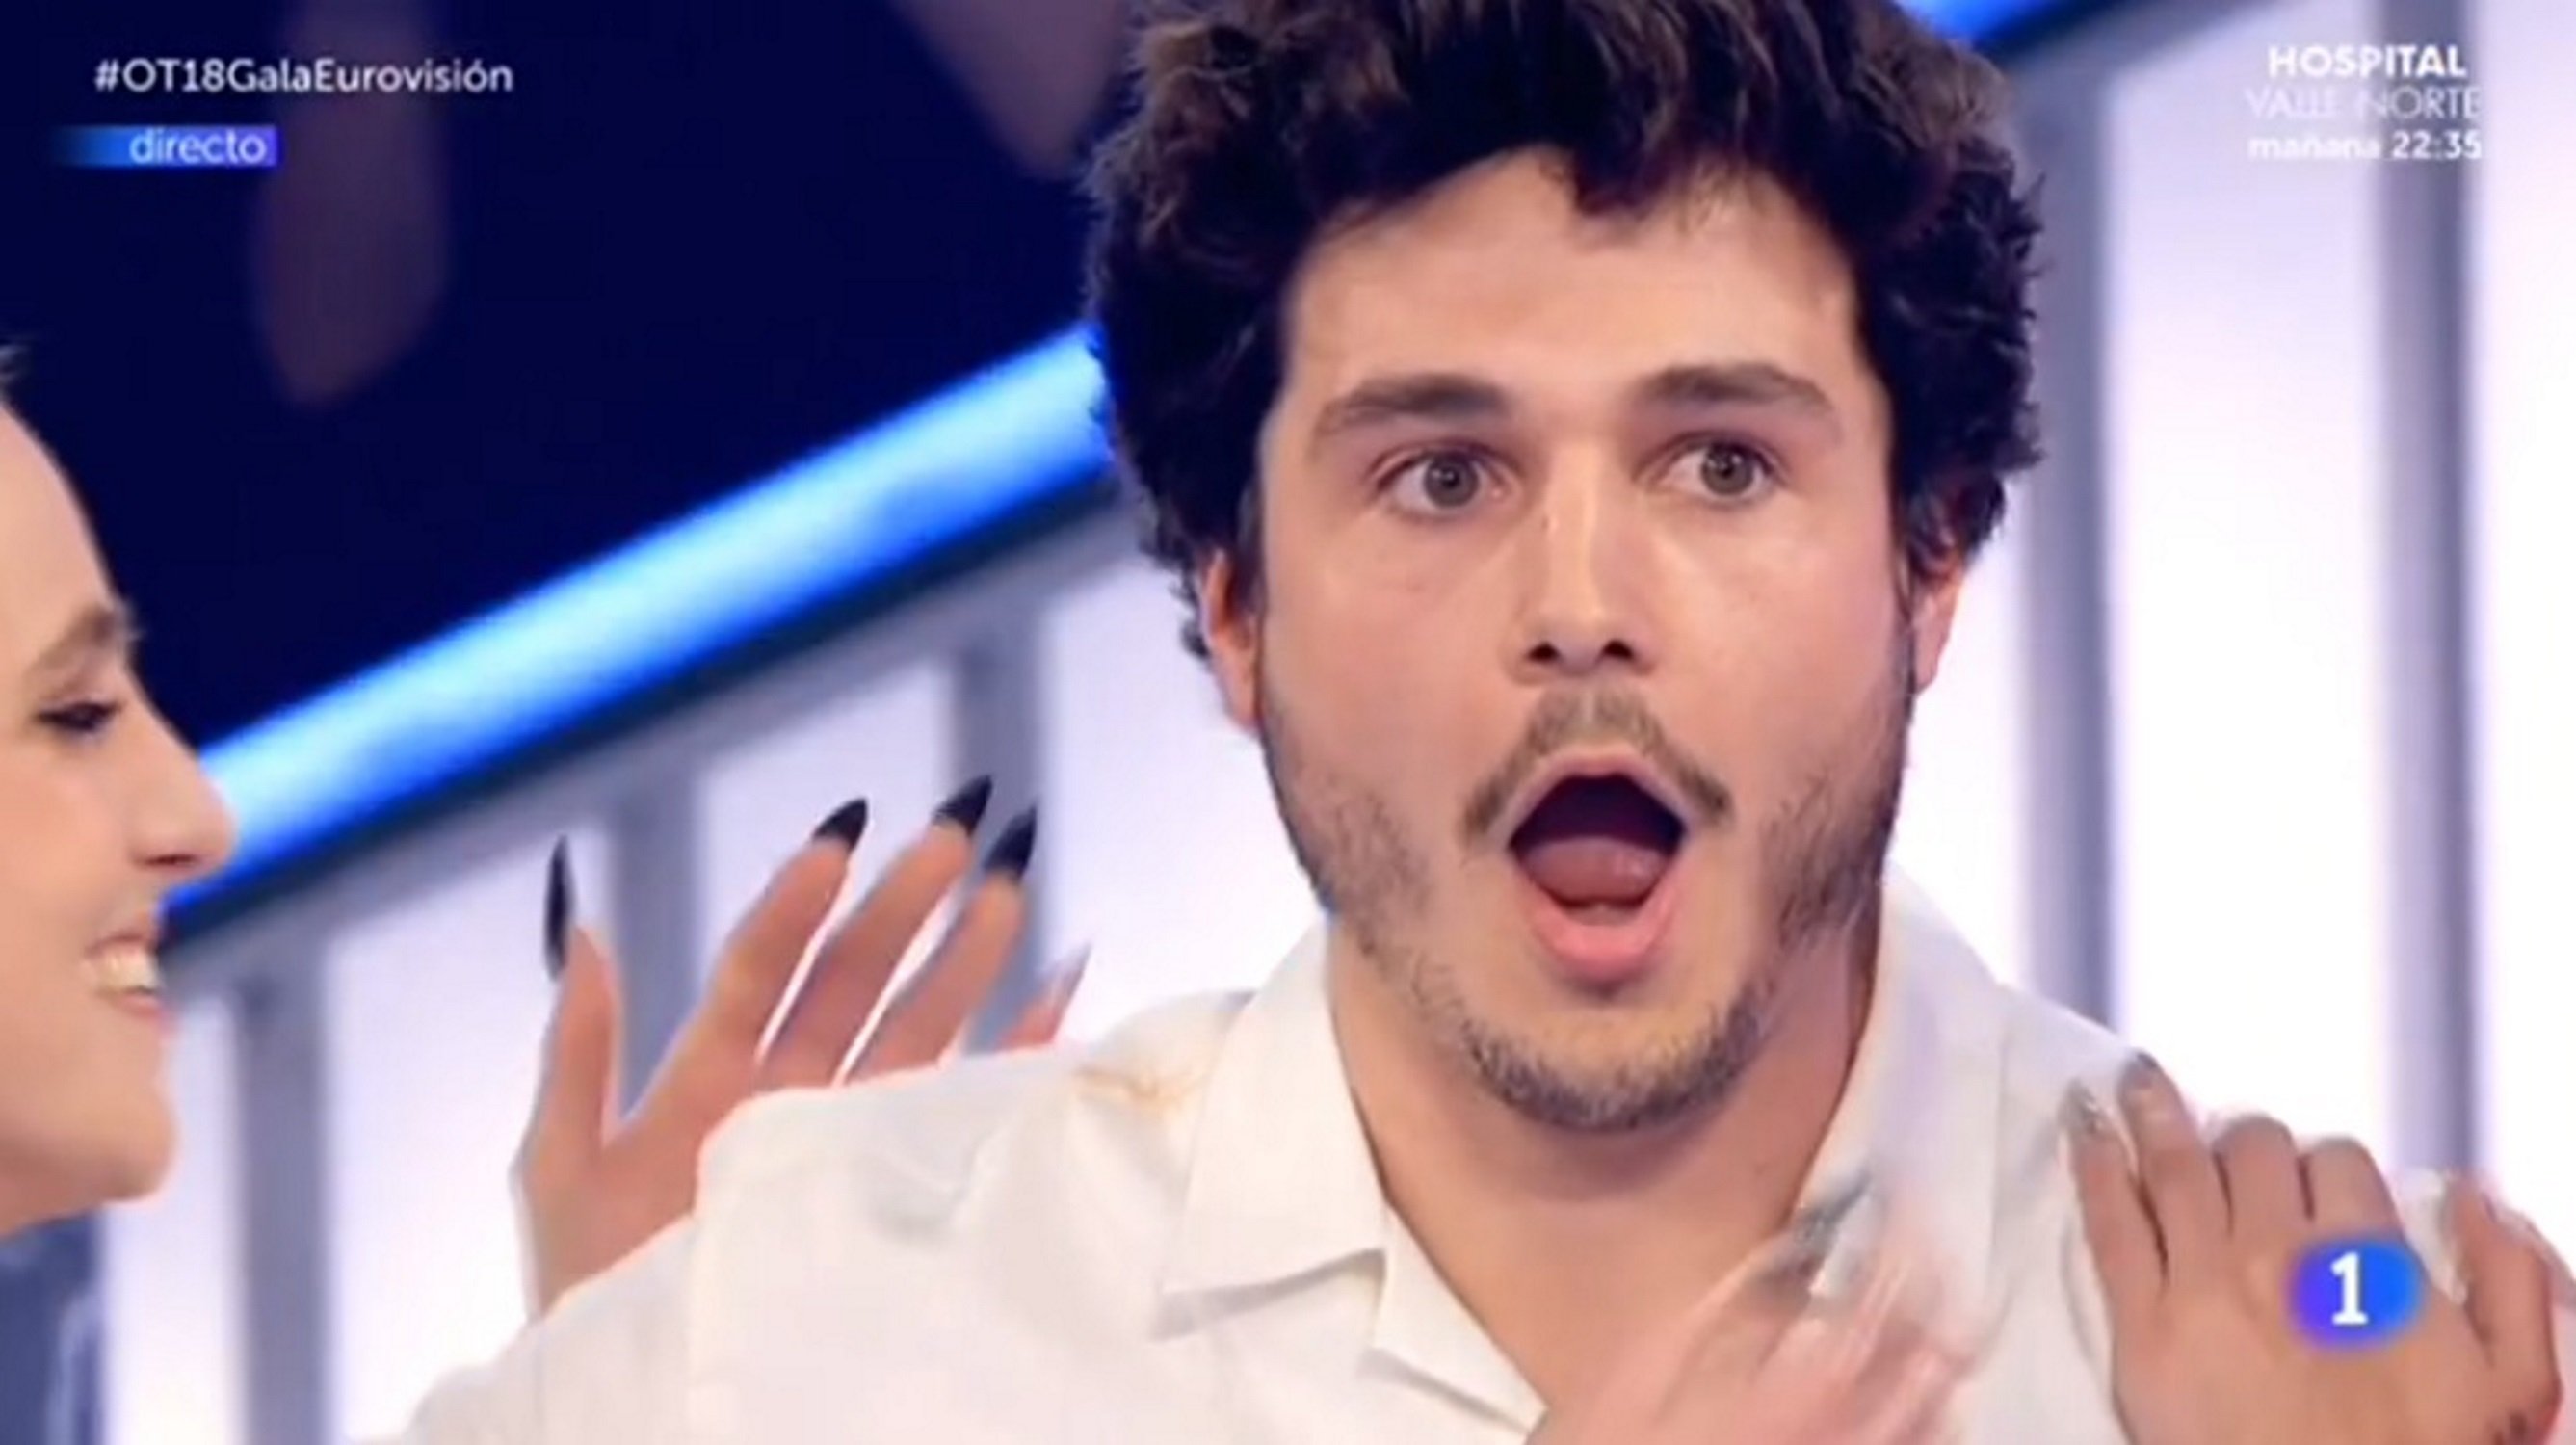 El famós cantant espanyol que anirà a Eurovisió després de l''indepe' Miki